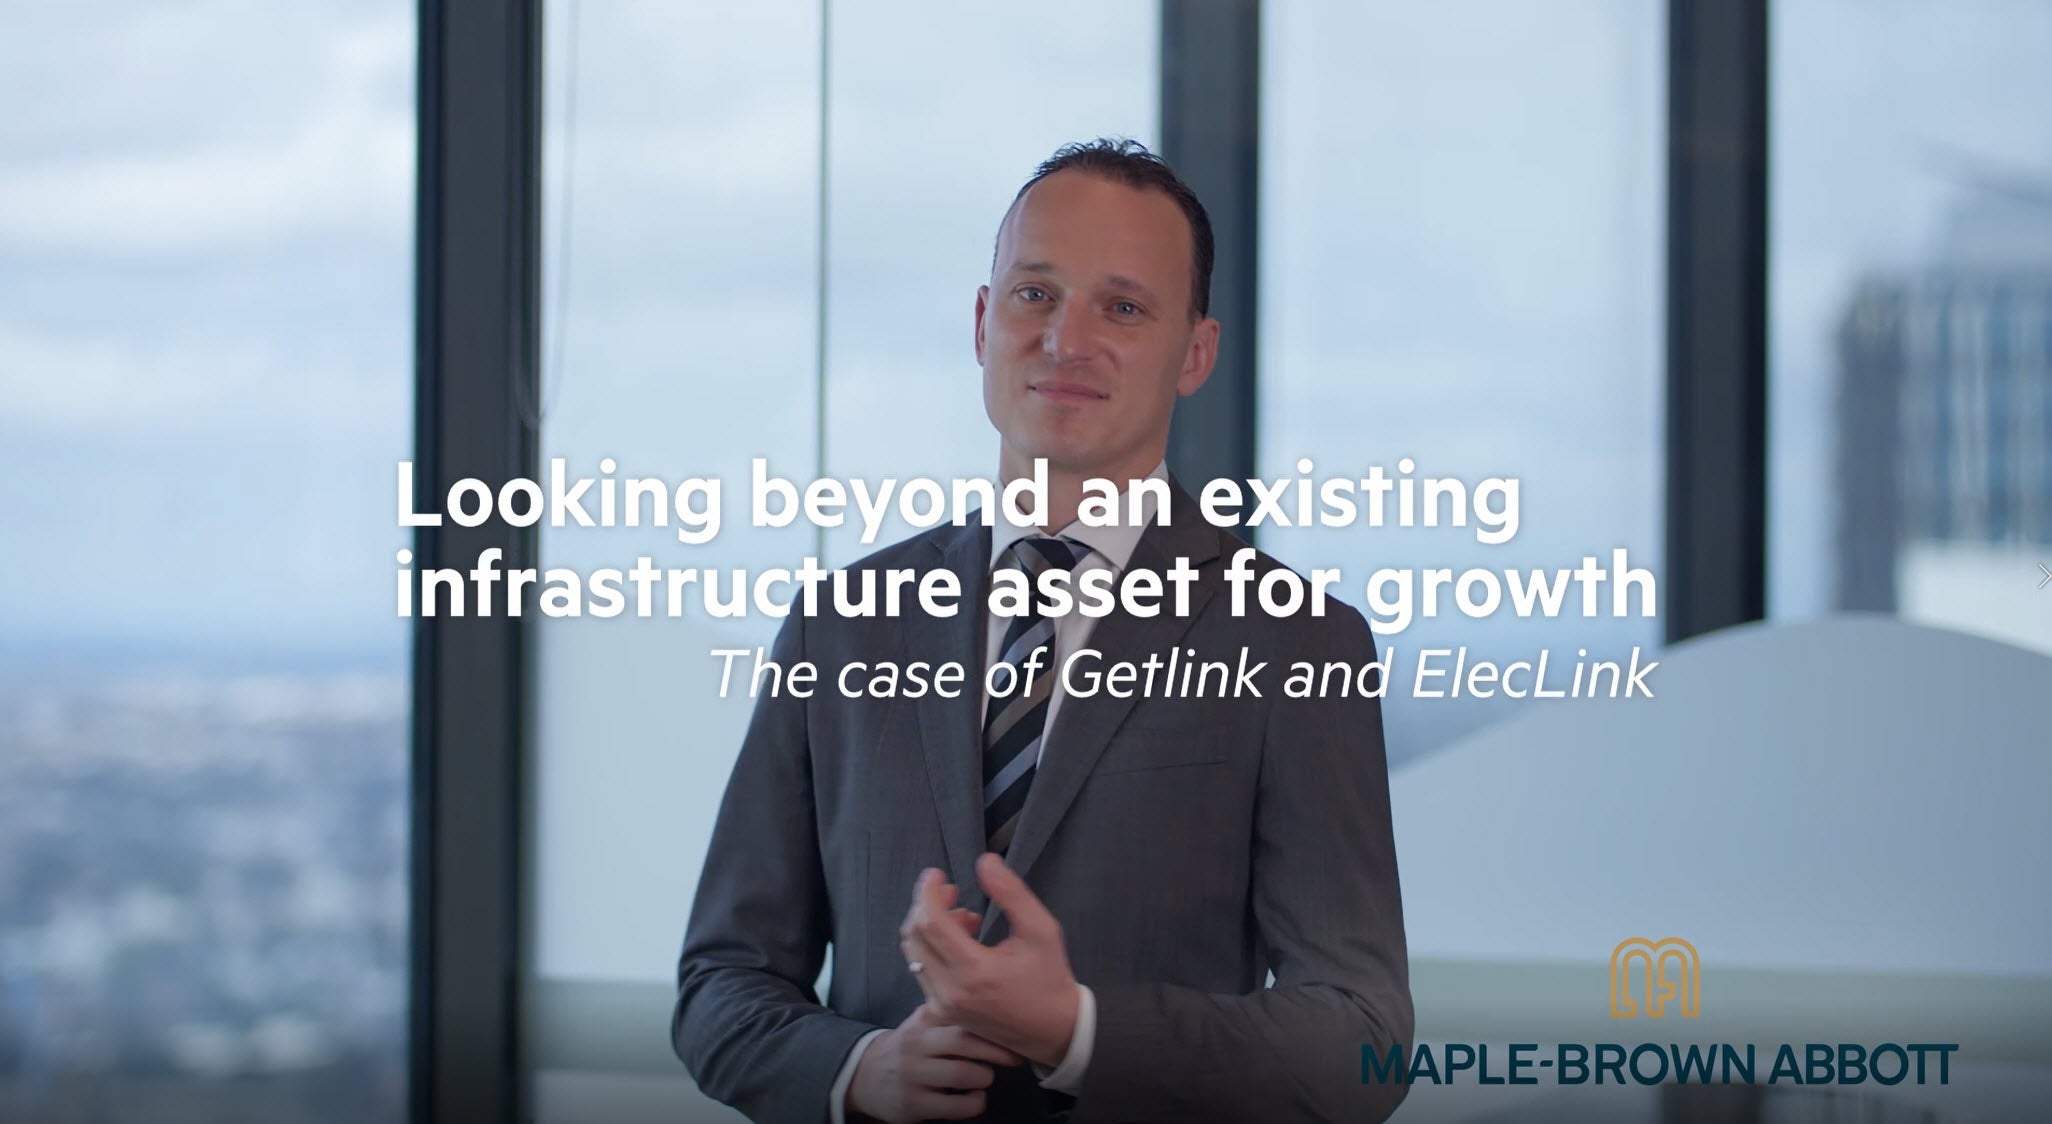 Steven Kempler – The case of Getlink and ElecLink